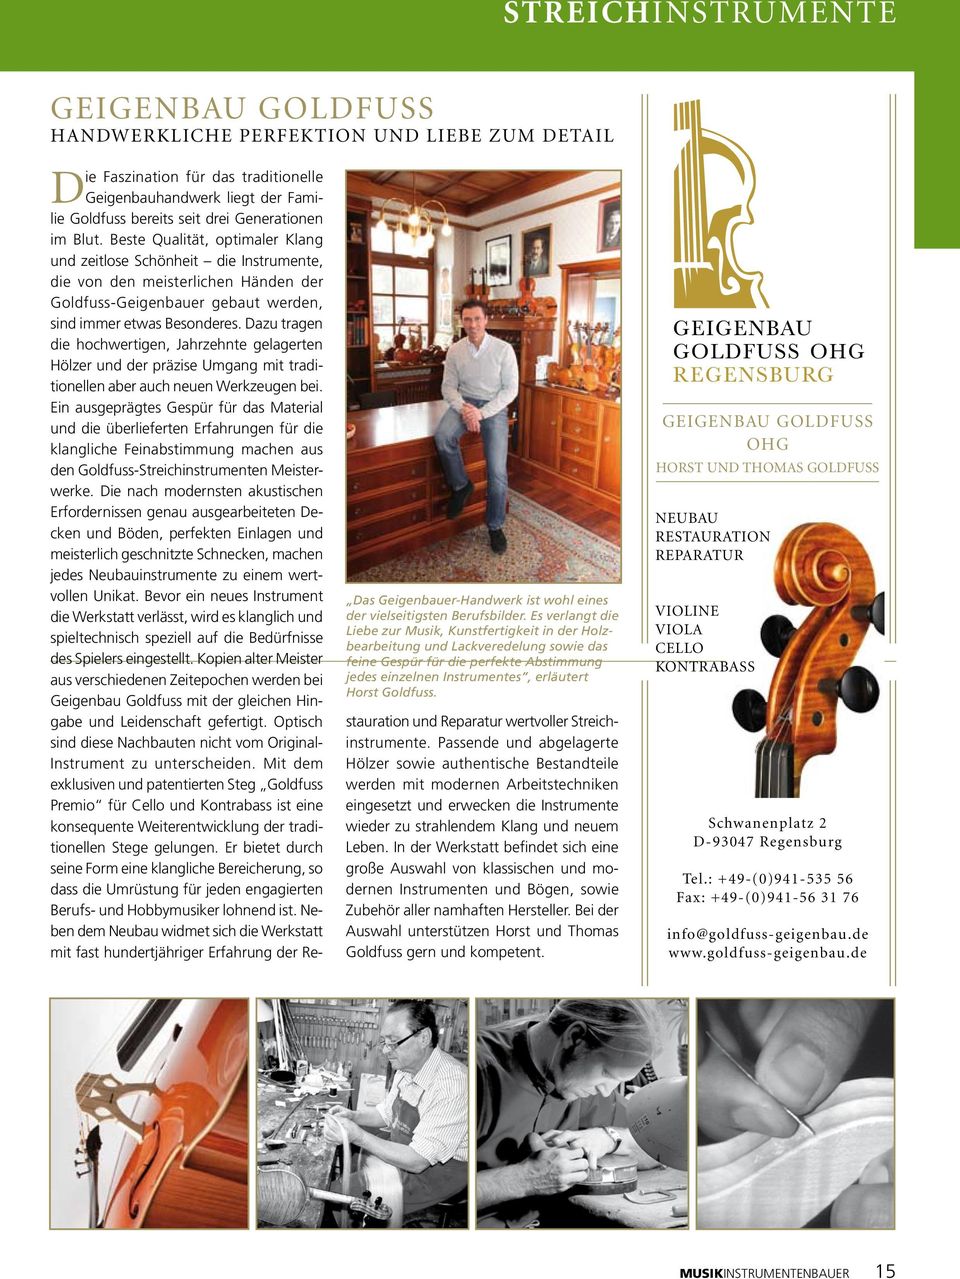 Die Faszination für das traditionelle Geigenbauhandwerk liegt der Familie Goldfuss bereits seit drei Generationen im Blut.